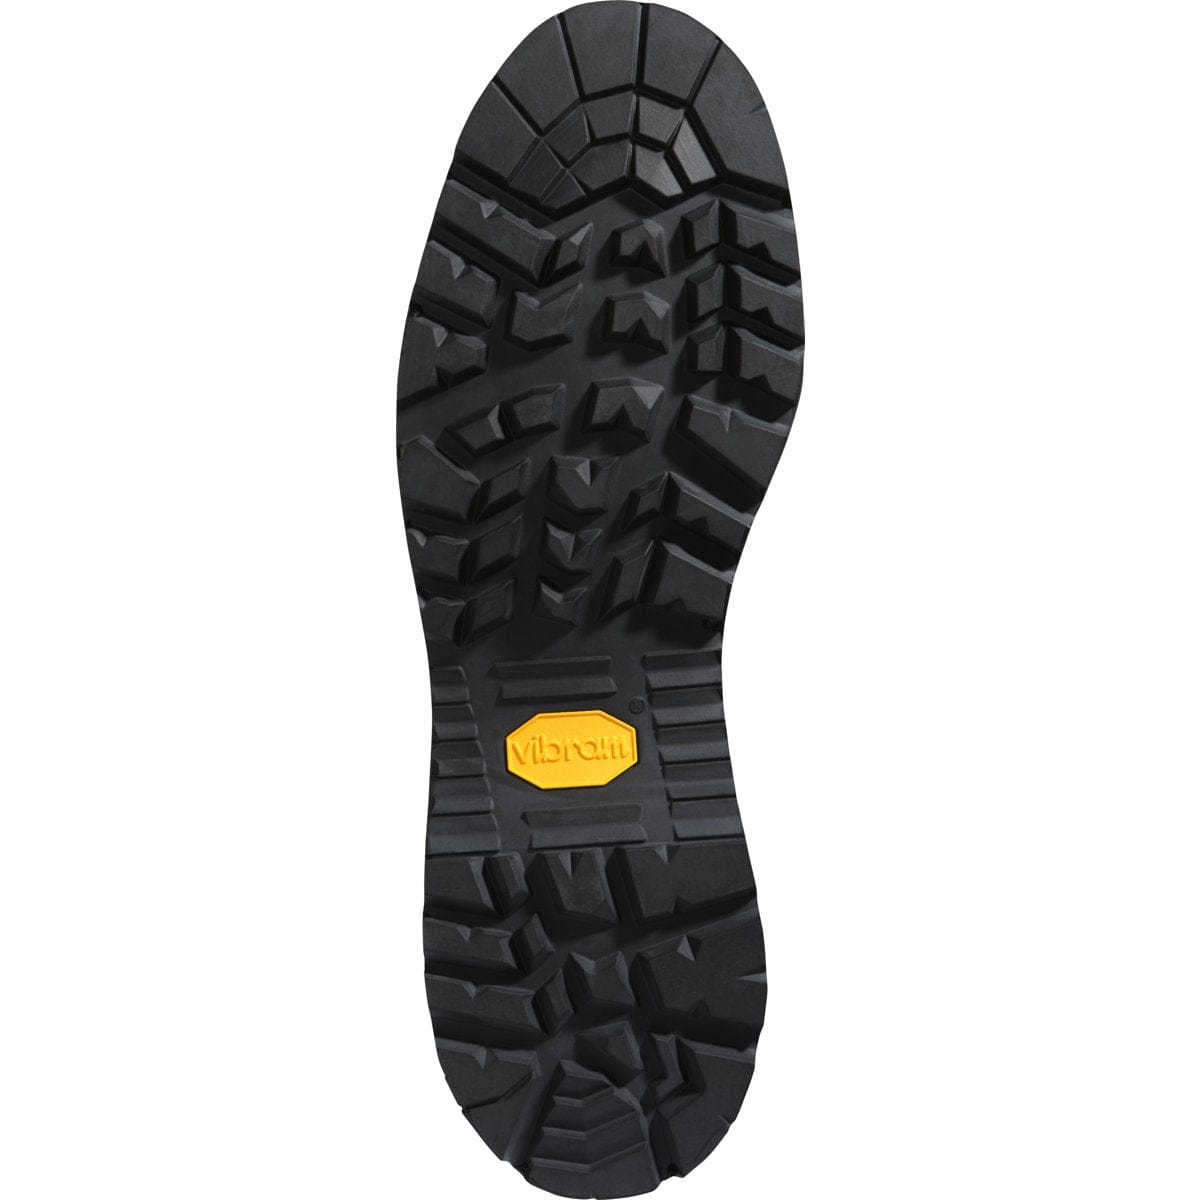 Danner Danner Womens Sierra 8" 200G Hunting Boot Footwear